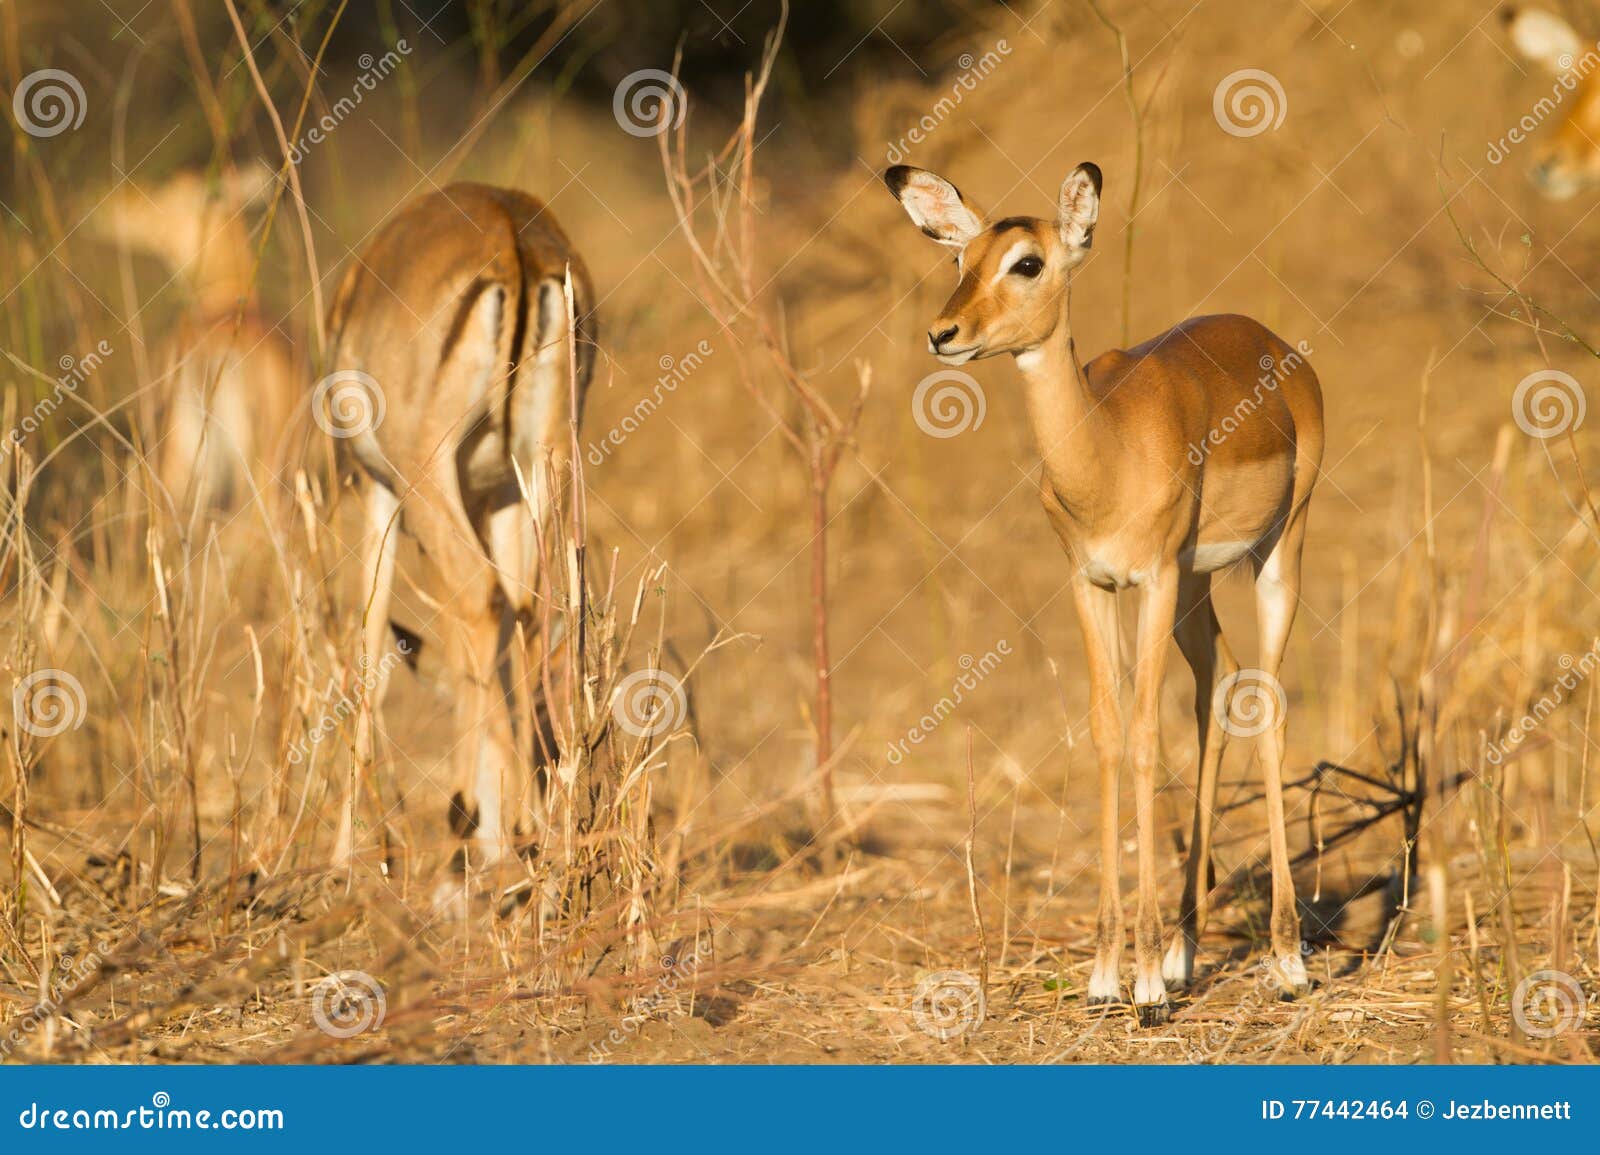 female impala (aepyceros melampus)